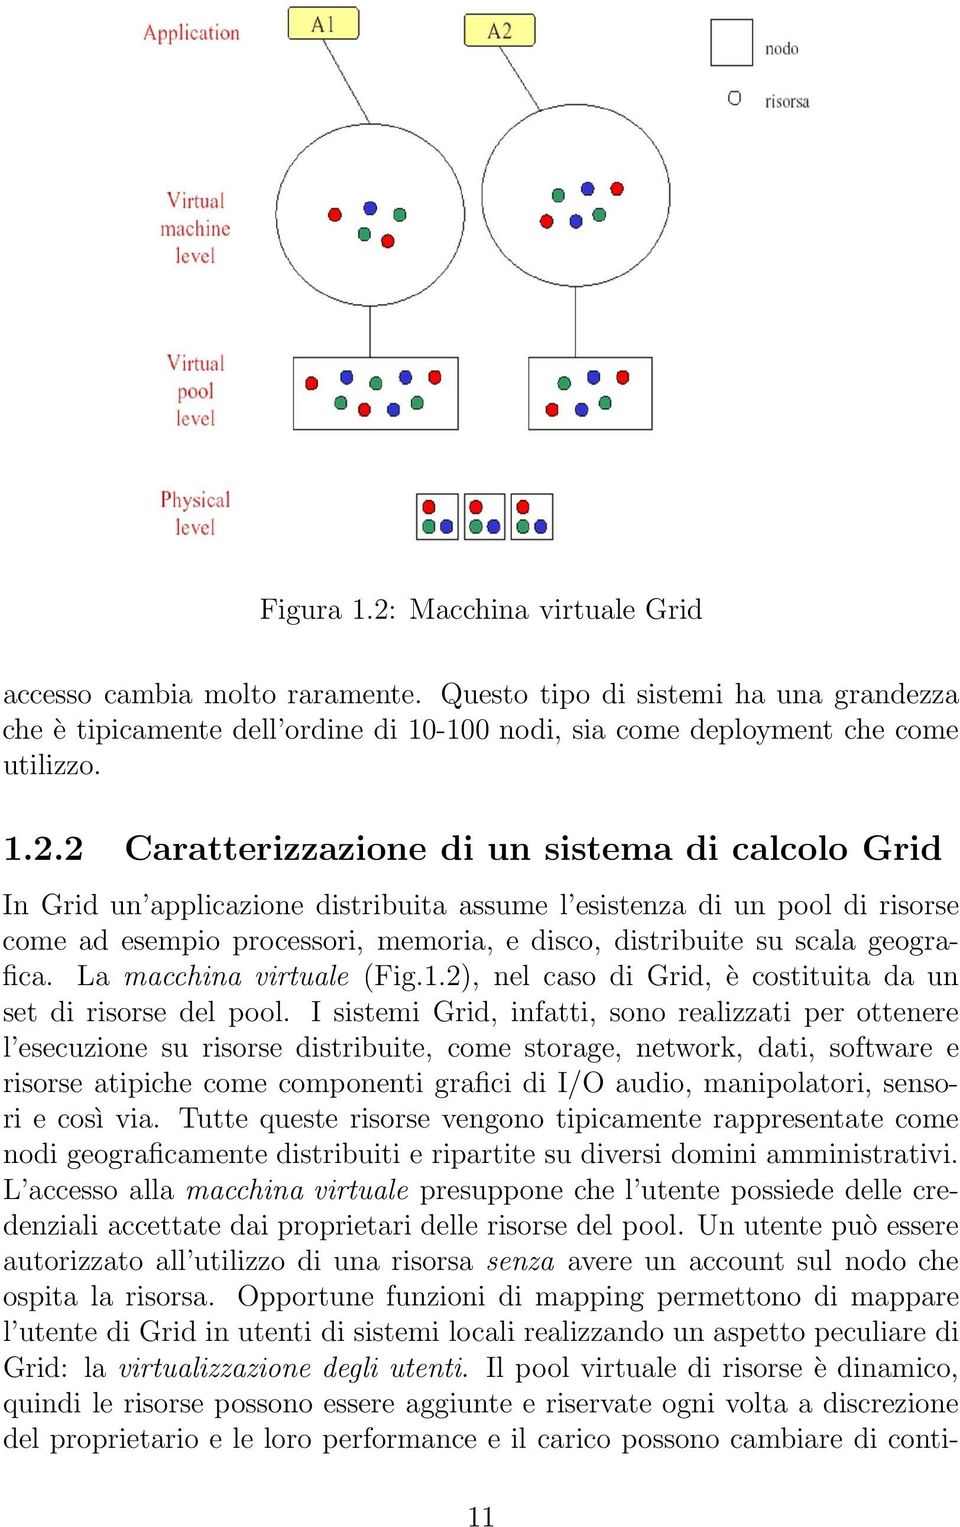 2 Caratterizzazione di un sistema di calcolo Grid In Grid un applicazione distribuita assume l esistenza di un pool di risorse come ad esempio processori, memoria, e disco, distribuite su scala